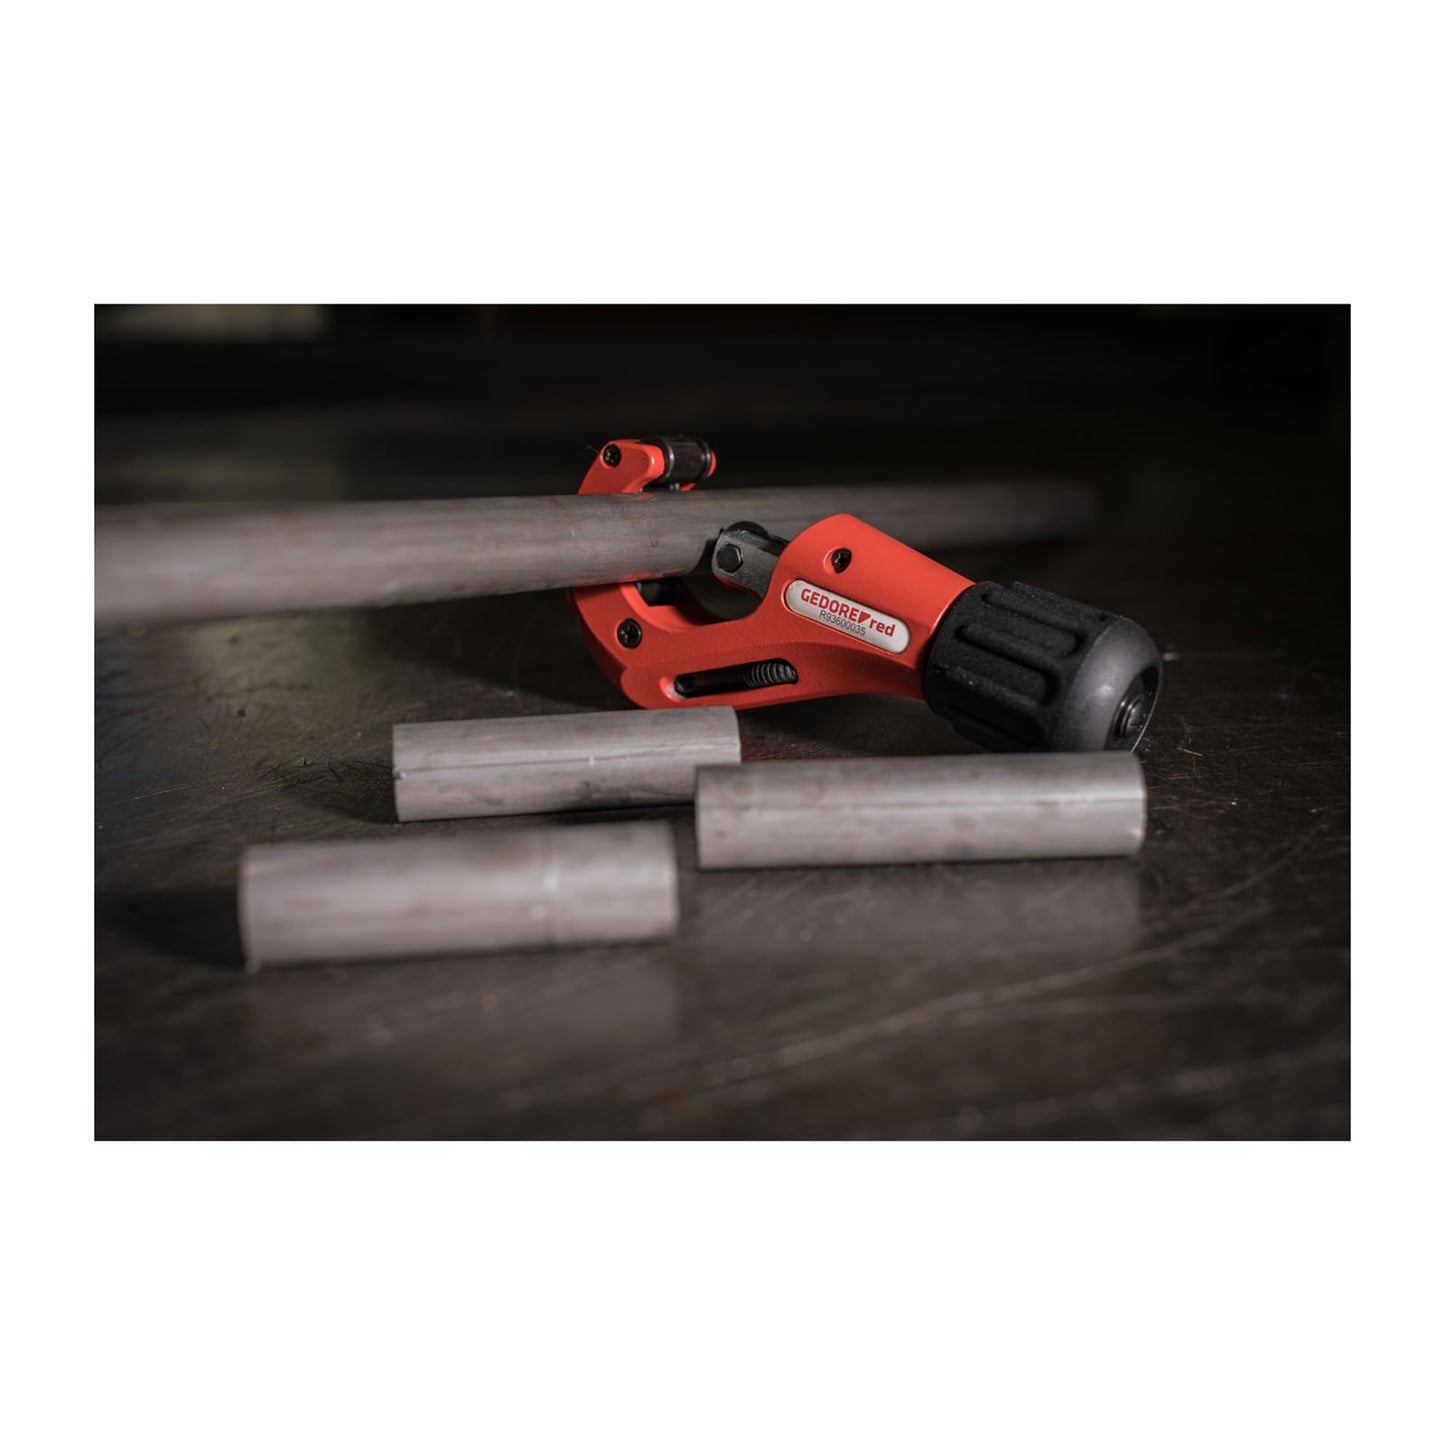 GEDORE red R93600035 - Cortatubos para tubos de cobre Ø 3-35 mm (3301617)